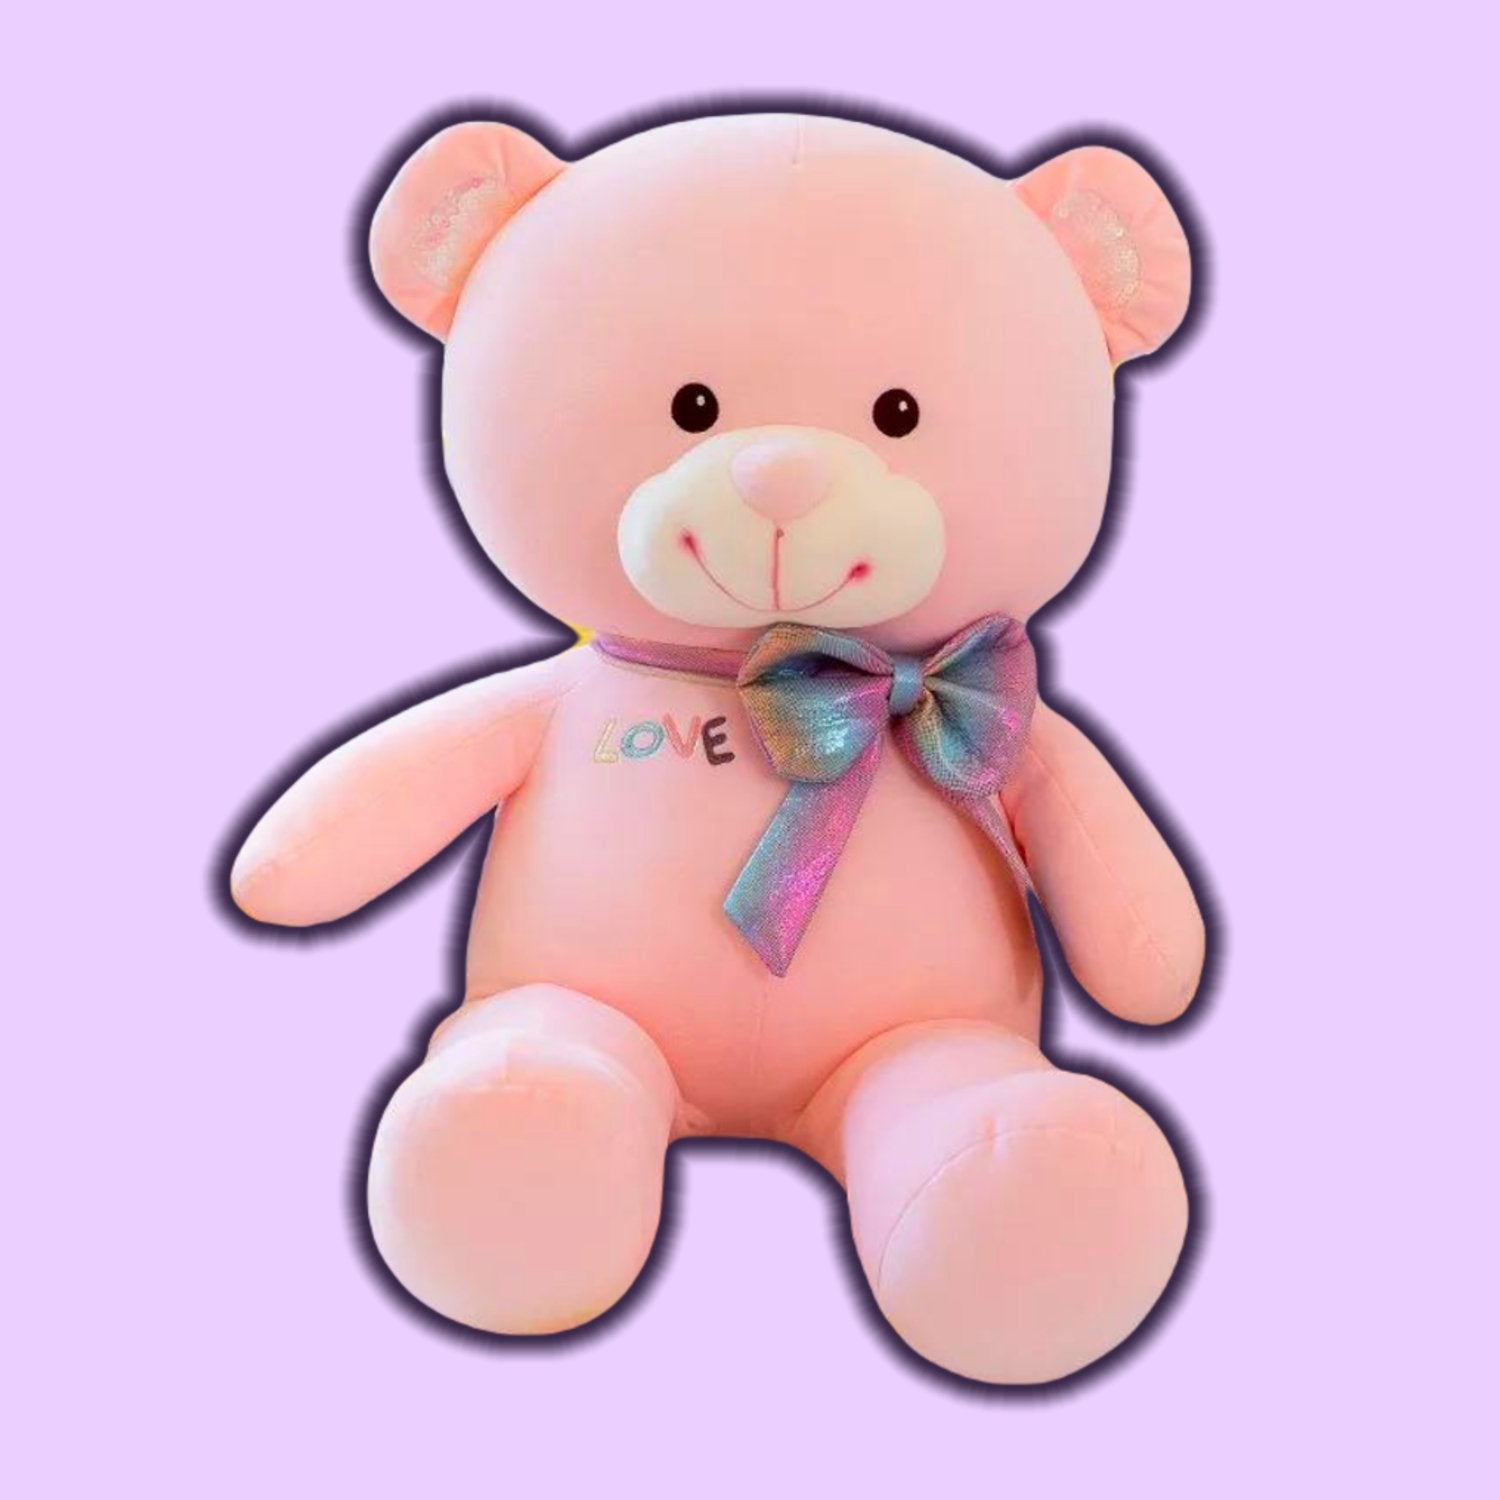 Cute Bow Teddy Bear Plush Toy